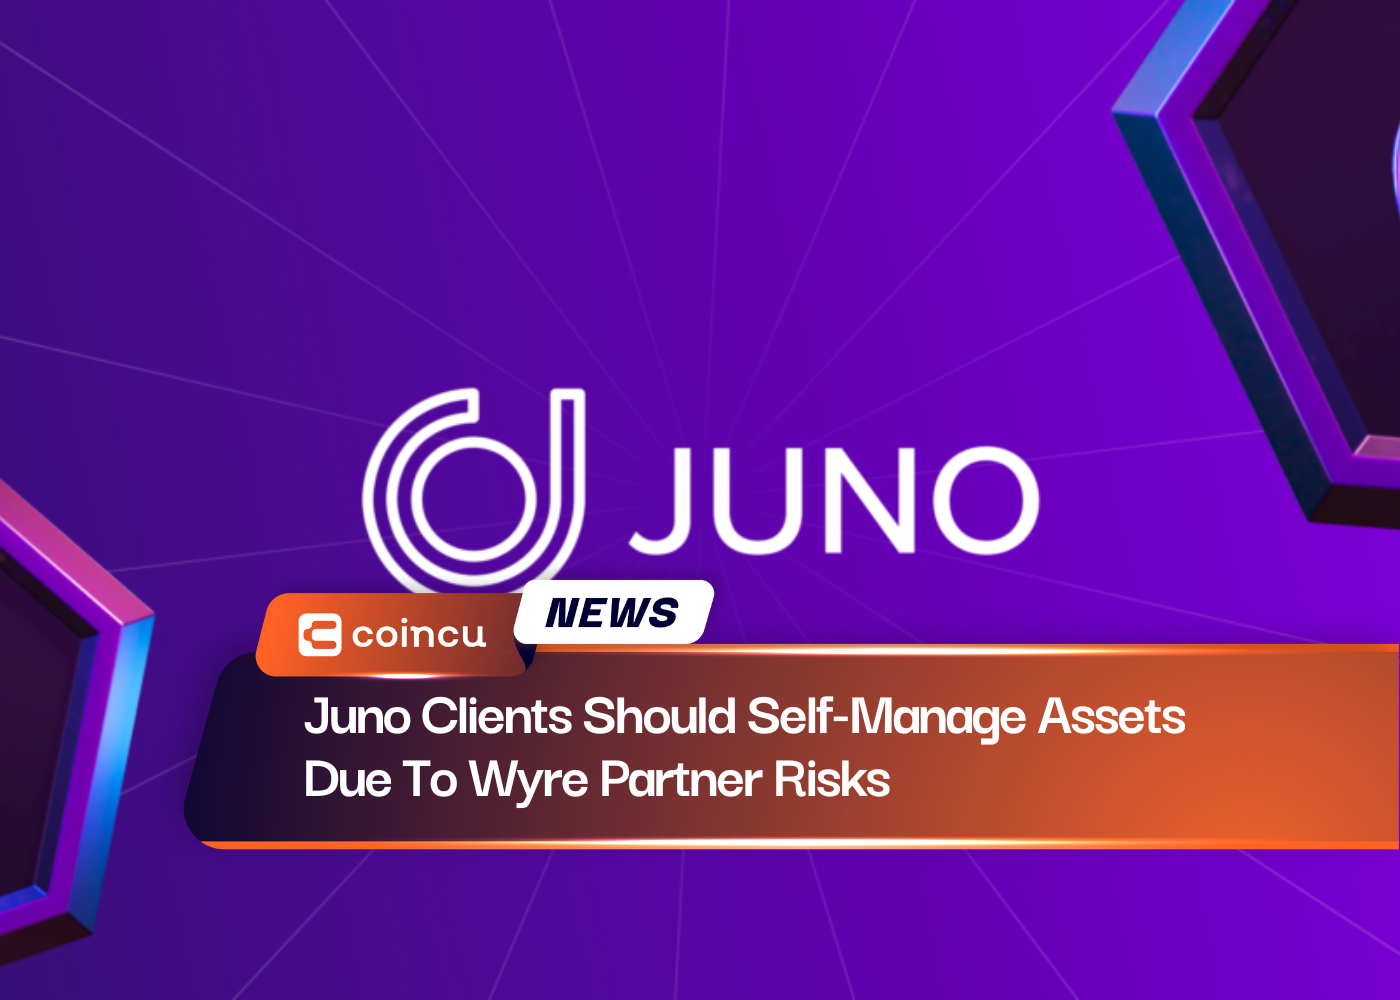 Juno-Kunden sollten aufgrund der Risiken von Wyre-Partnern ihr Vermögen selbst verwalten